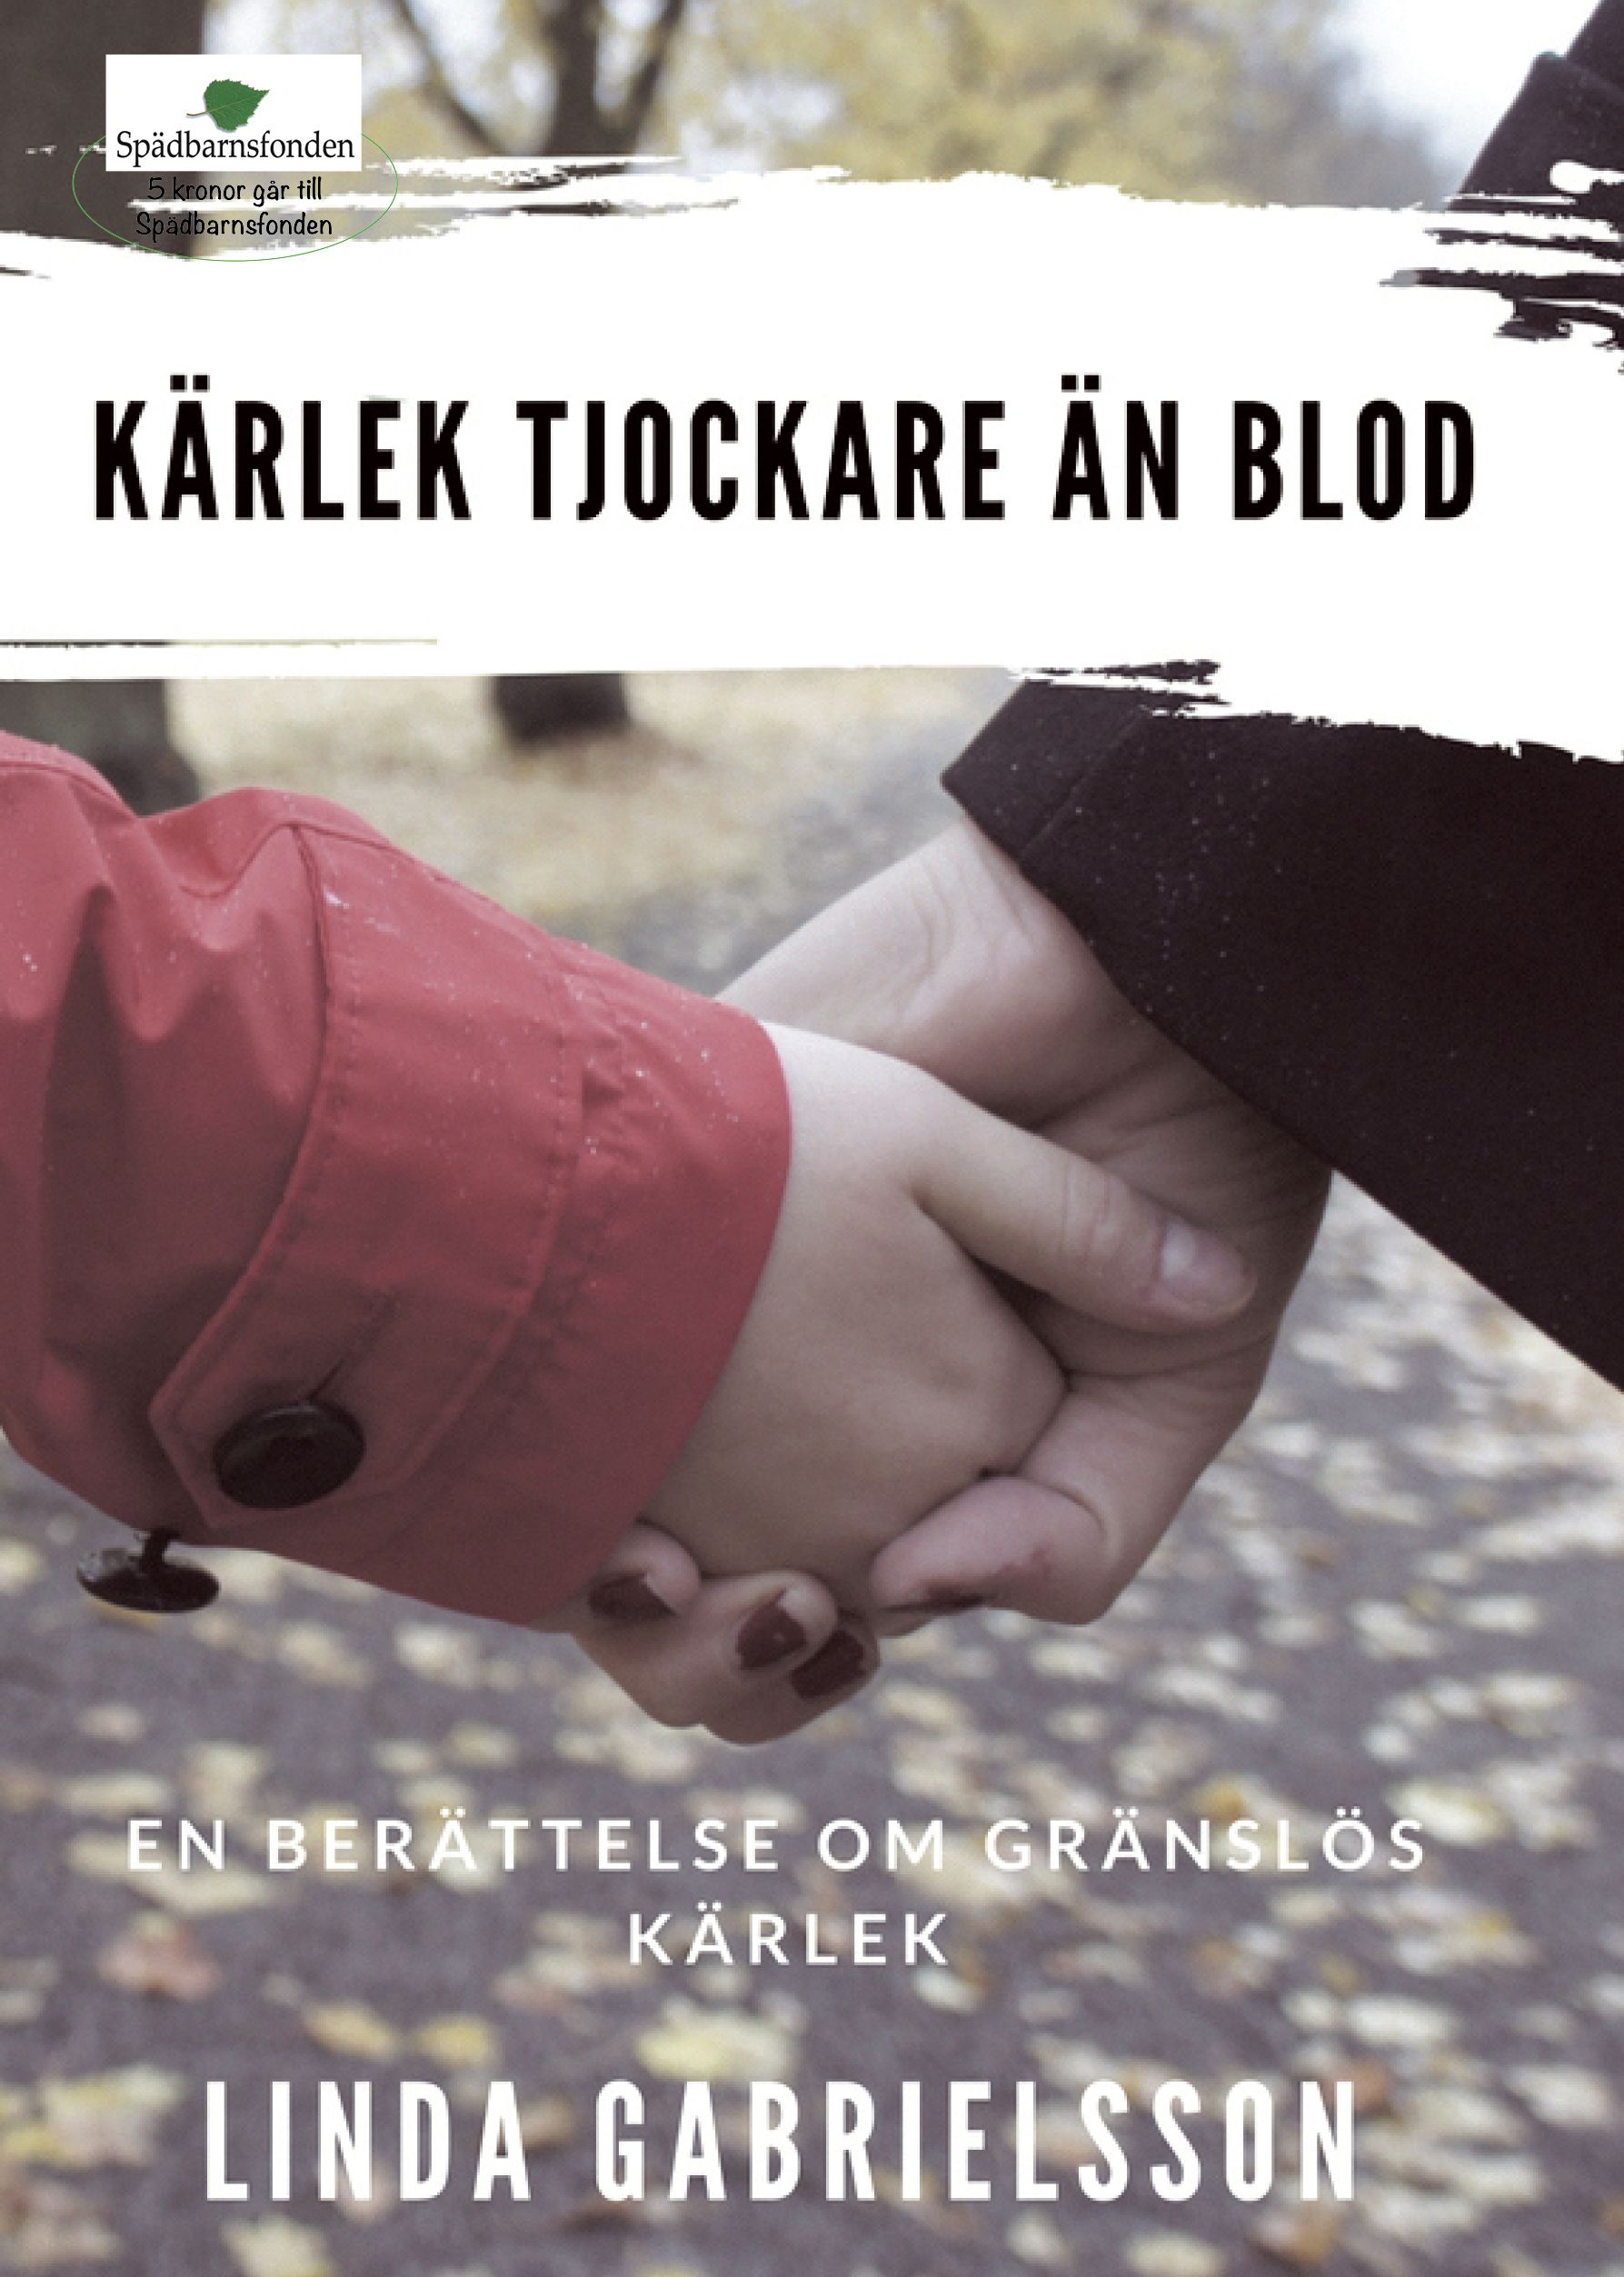 Kärlek tjockare än blod, e-bok av Linda Gabrielsson